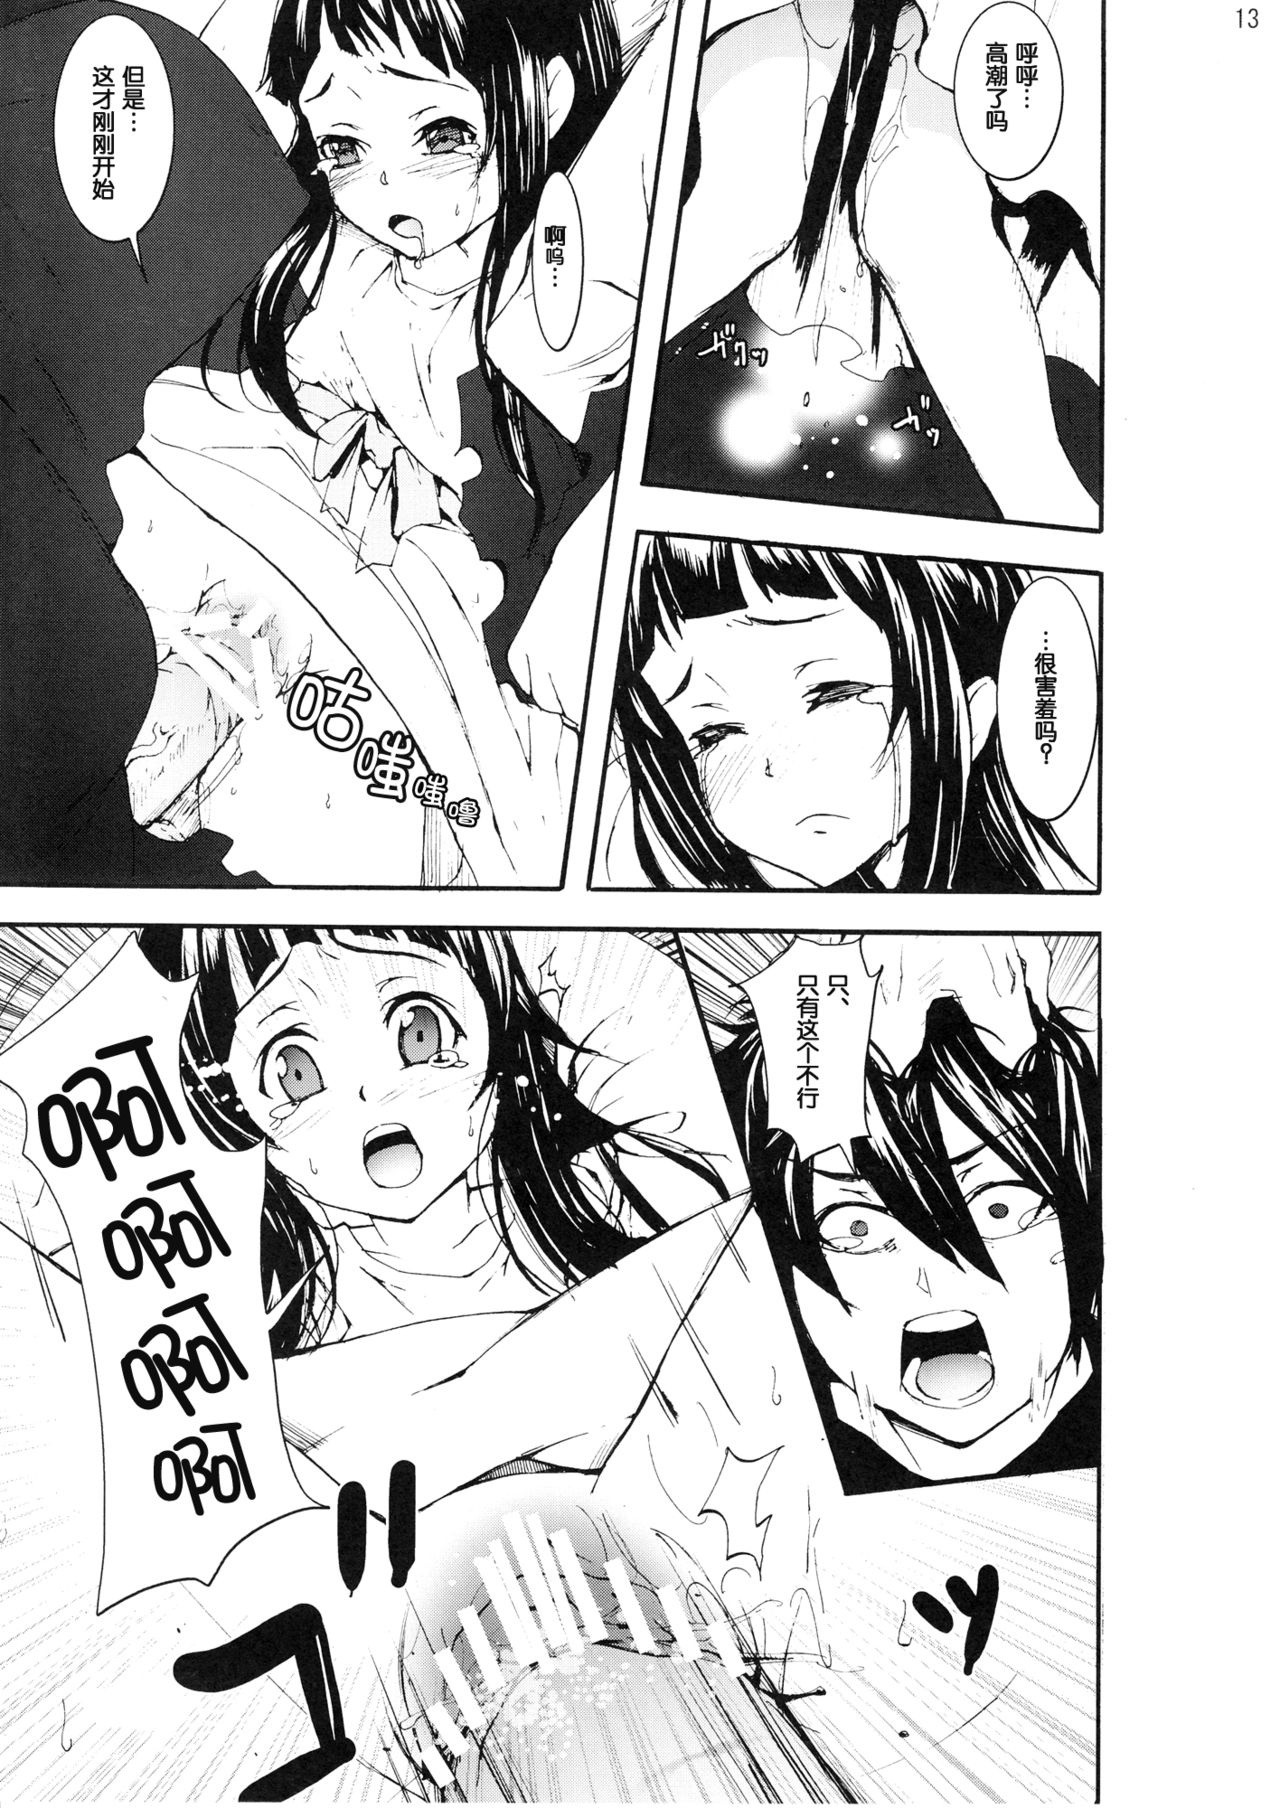 Asuna to Yui no Jigoku Rape hentai manga picture 11